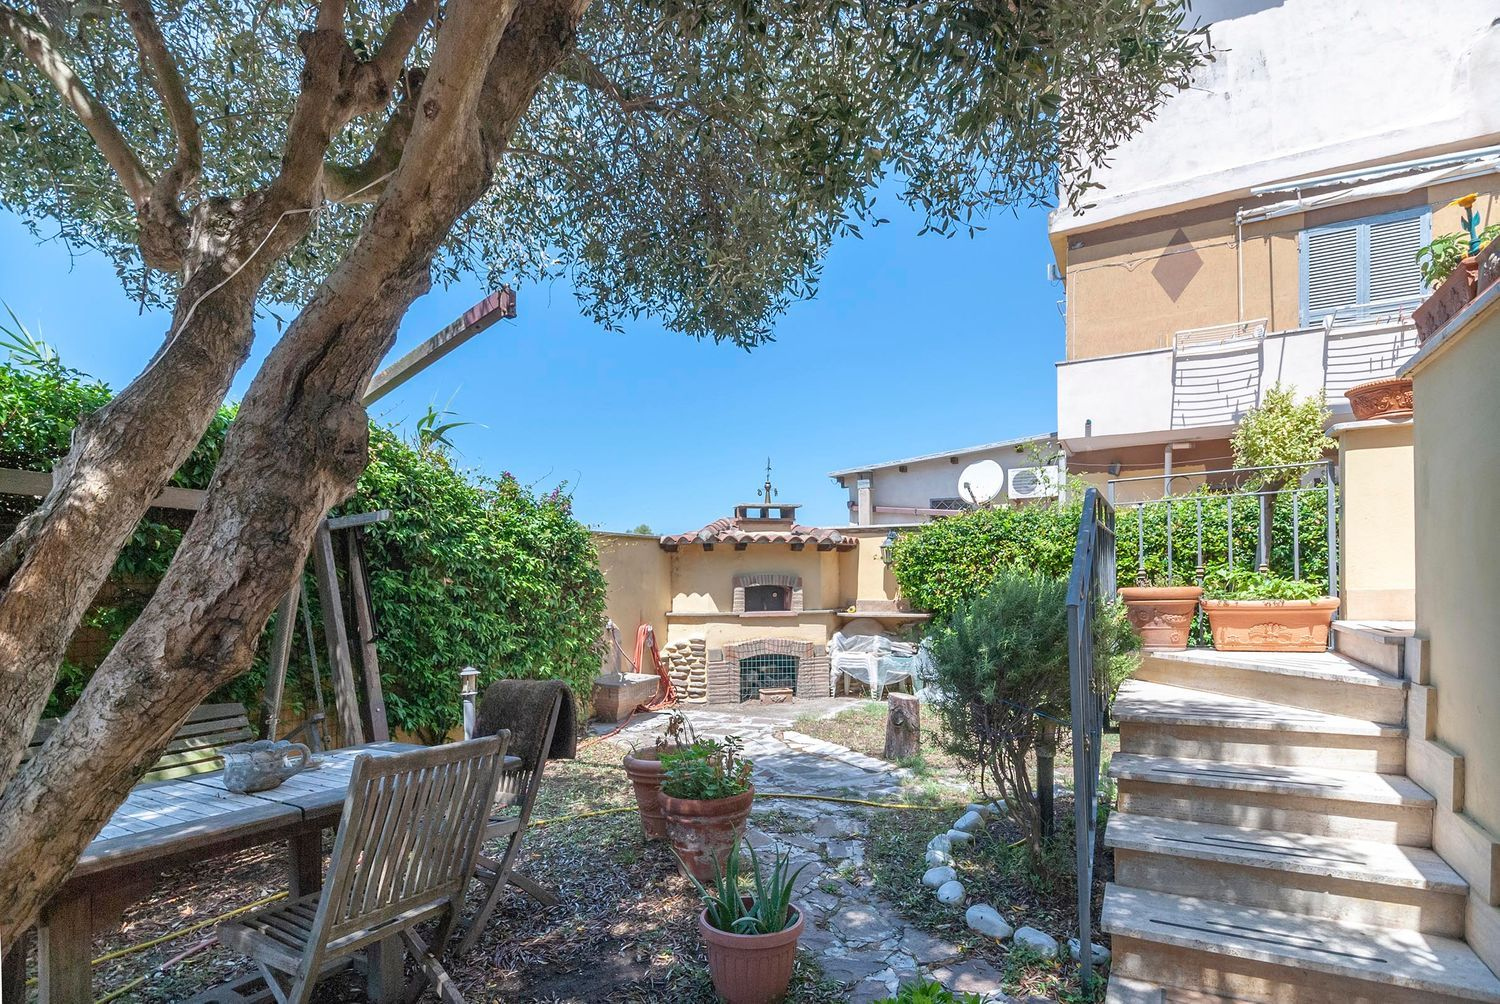 Villa in vendita a Fiumicino, 3 locali, prezzo € 219.000 | CambioCasa.it